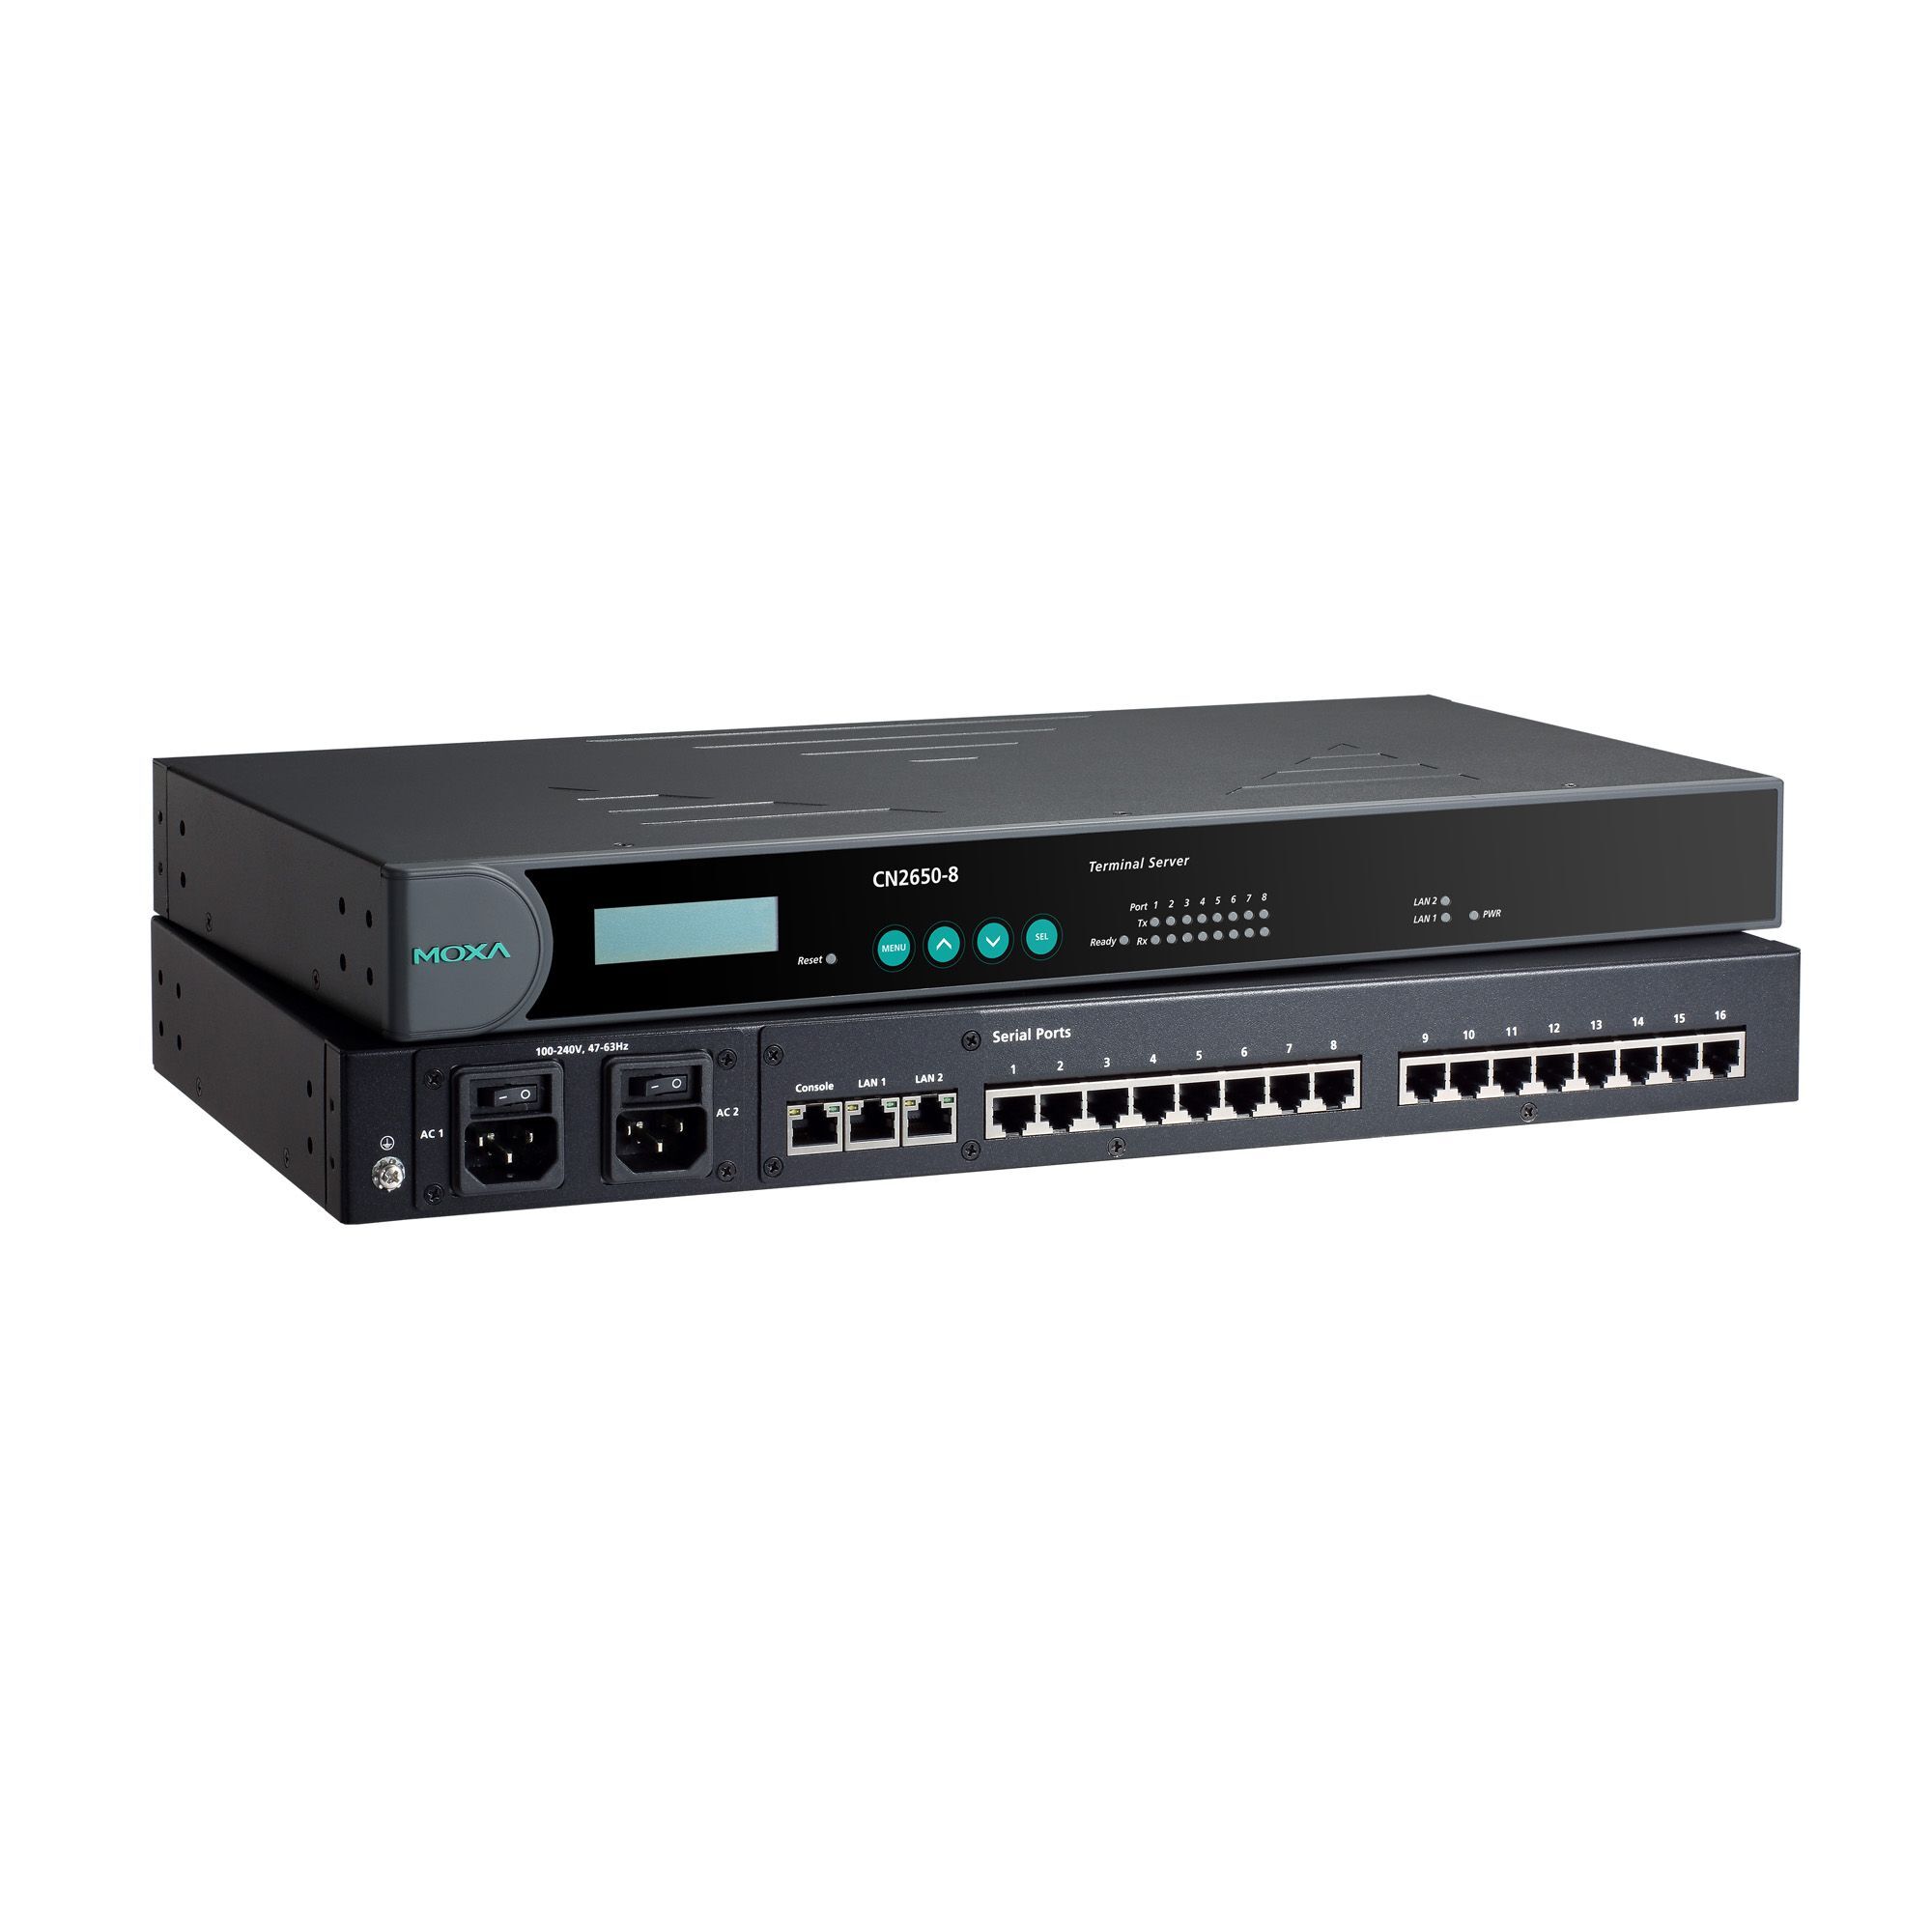 Серверное оборудование Moxa CN2650-8